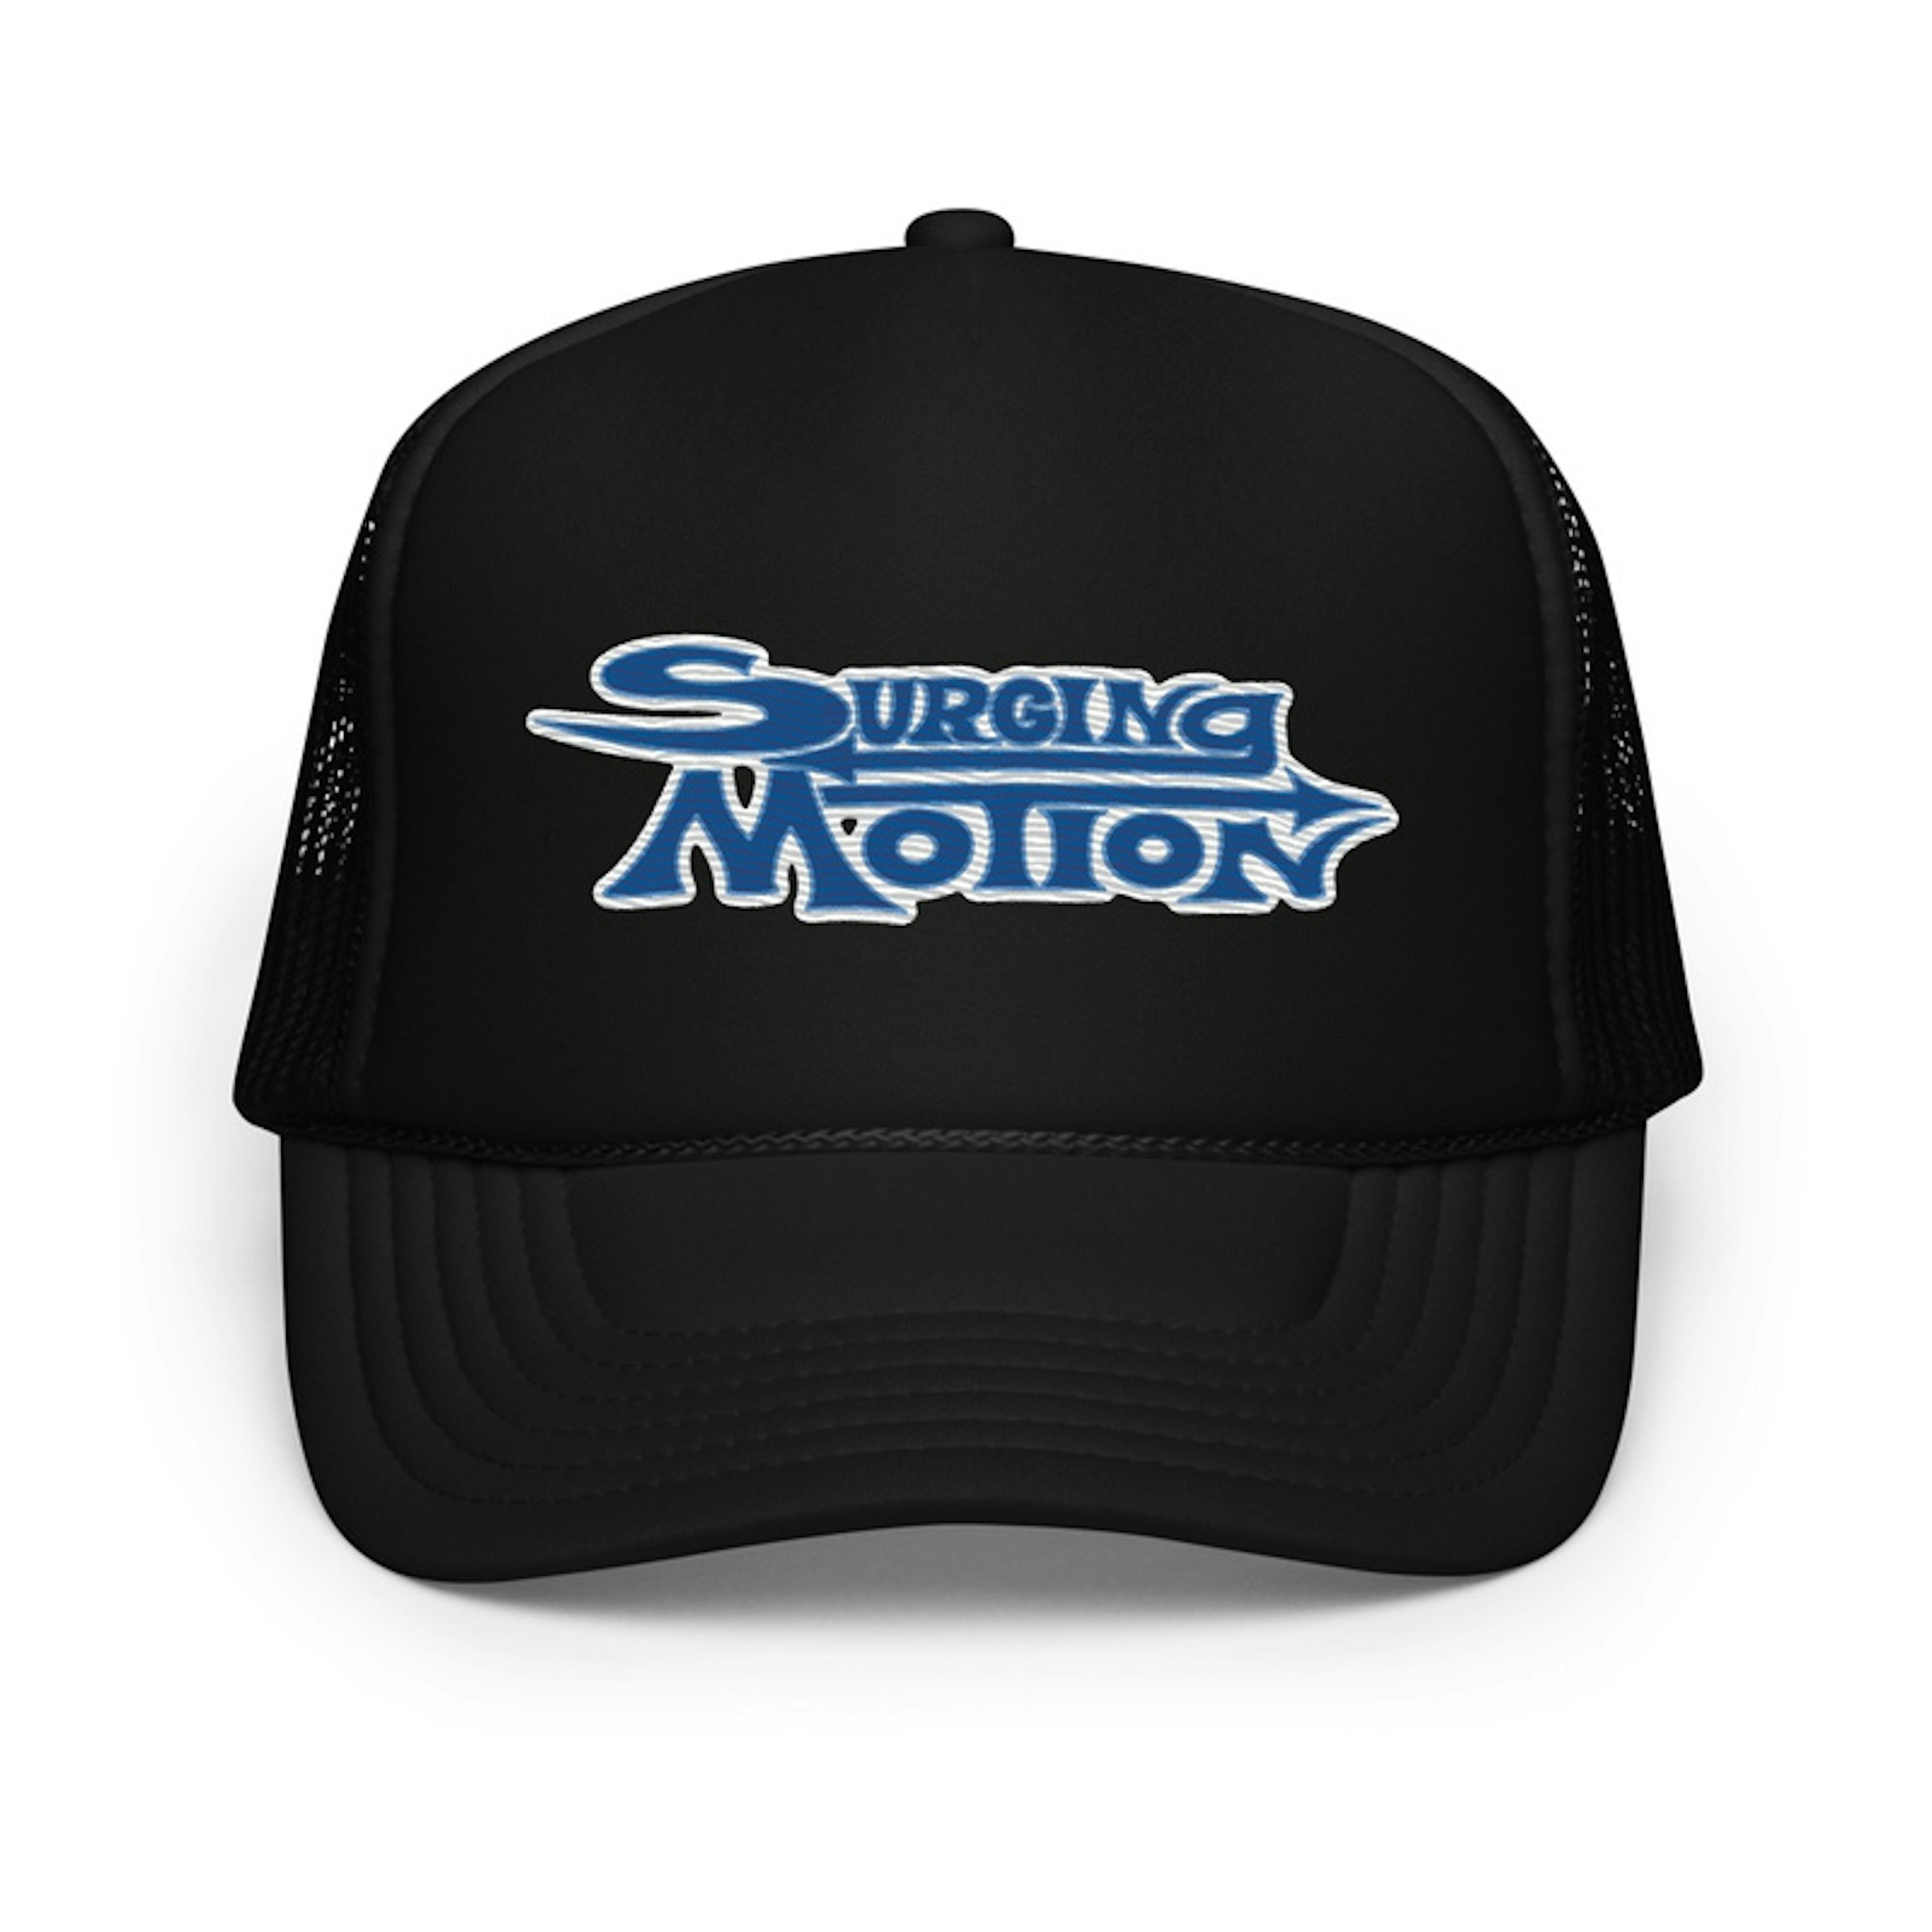 Surging Motion Foam Trucker Hat